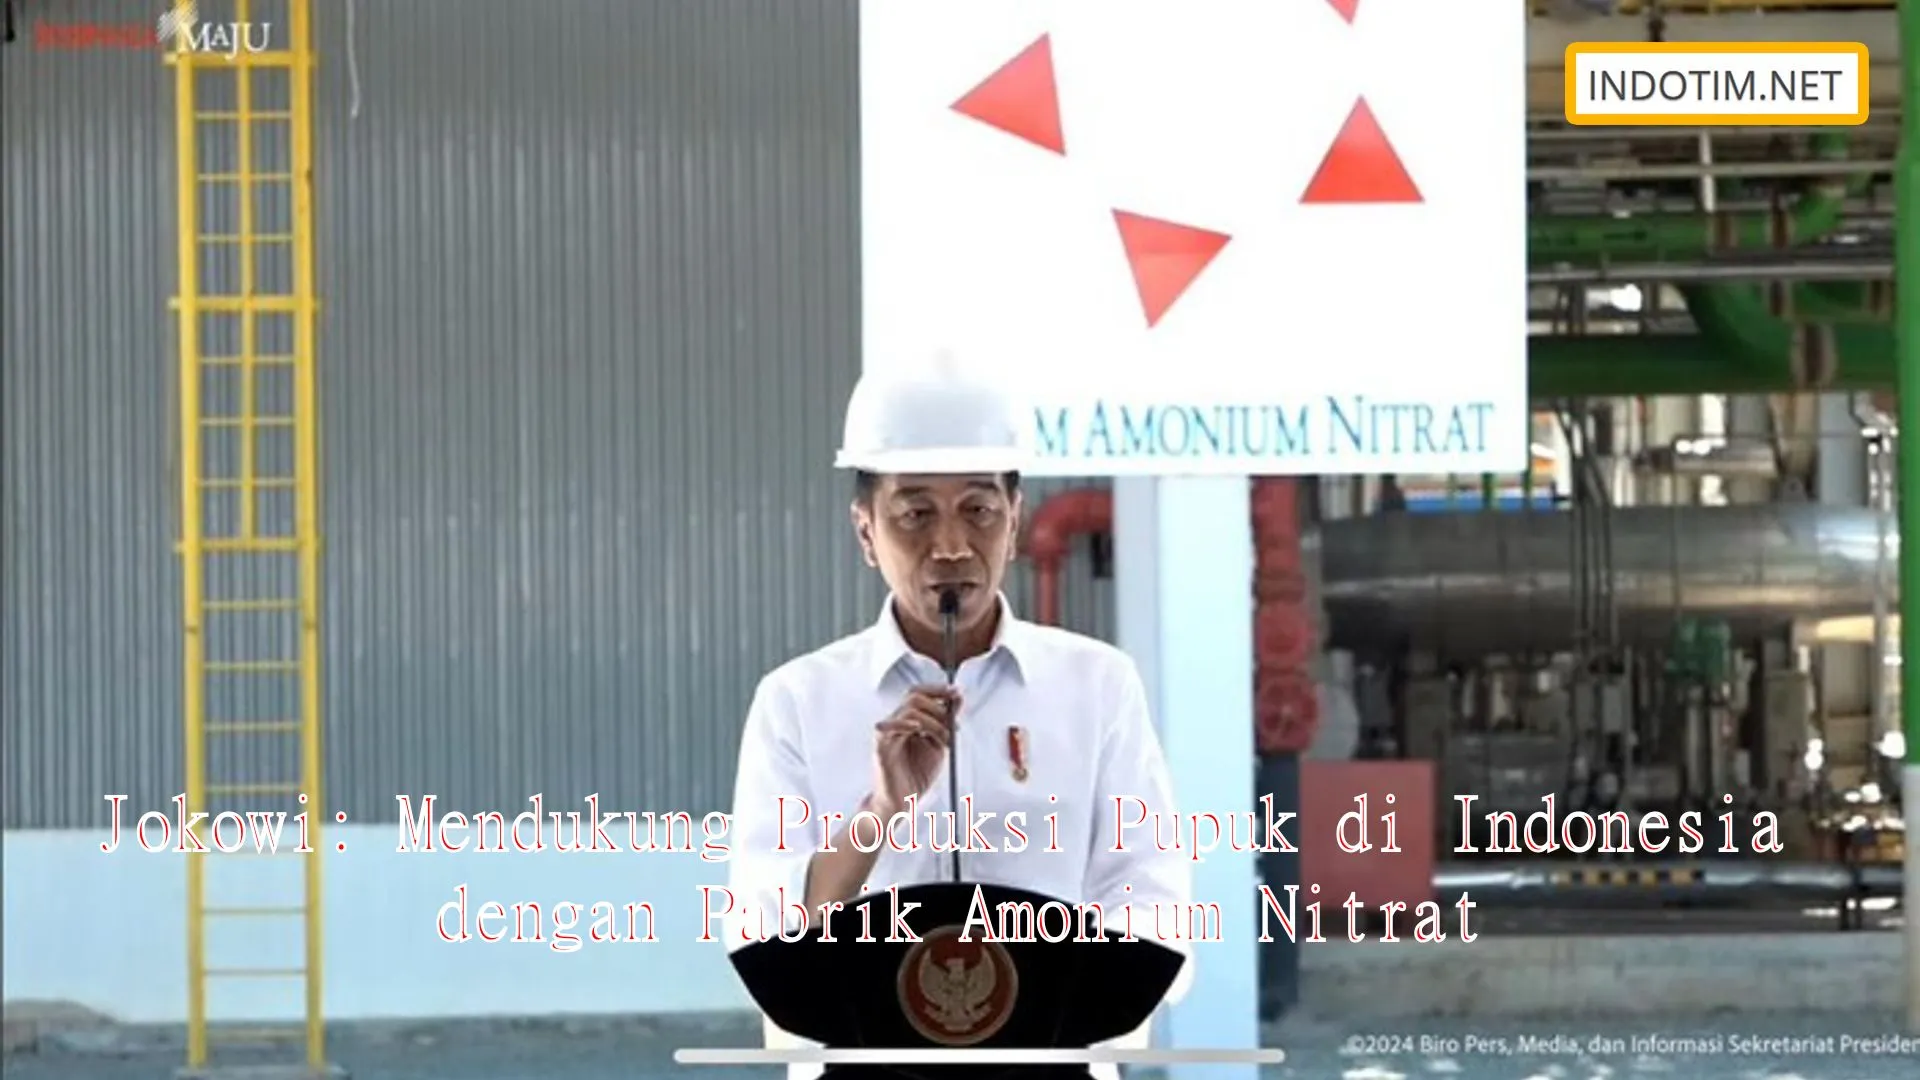 Jokowi: Mendukung Produksi Pupuk di Indonesia dengan Pabrik Amonium Nitrat